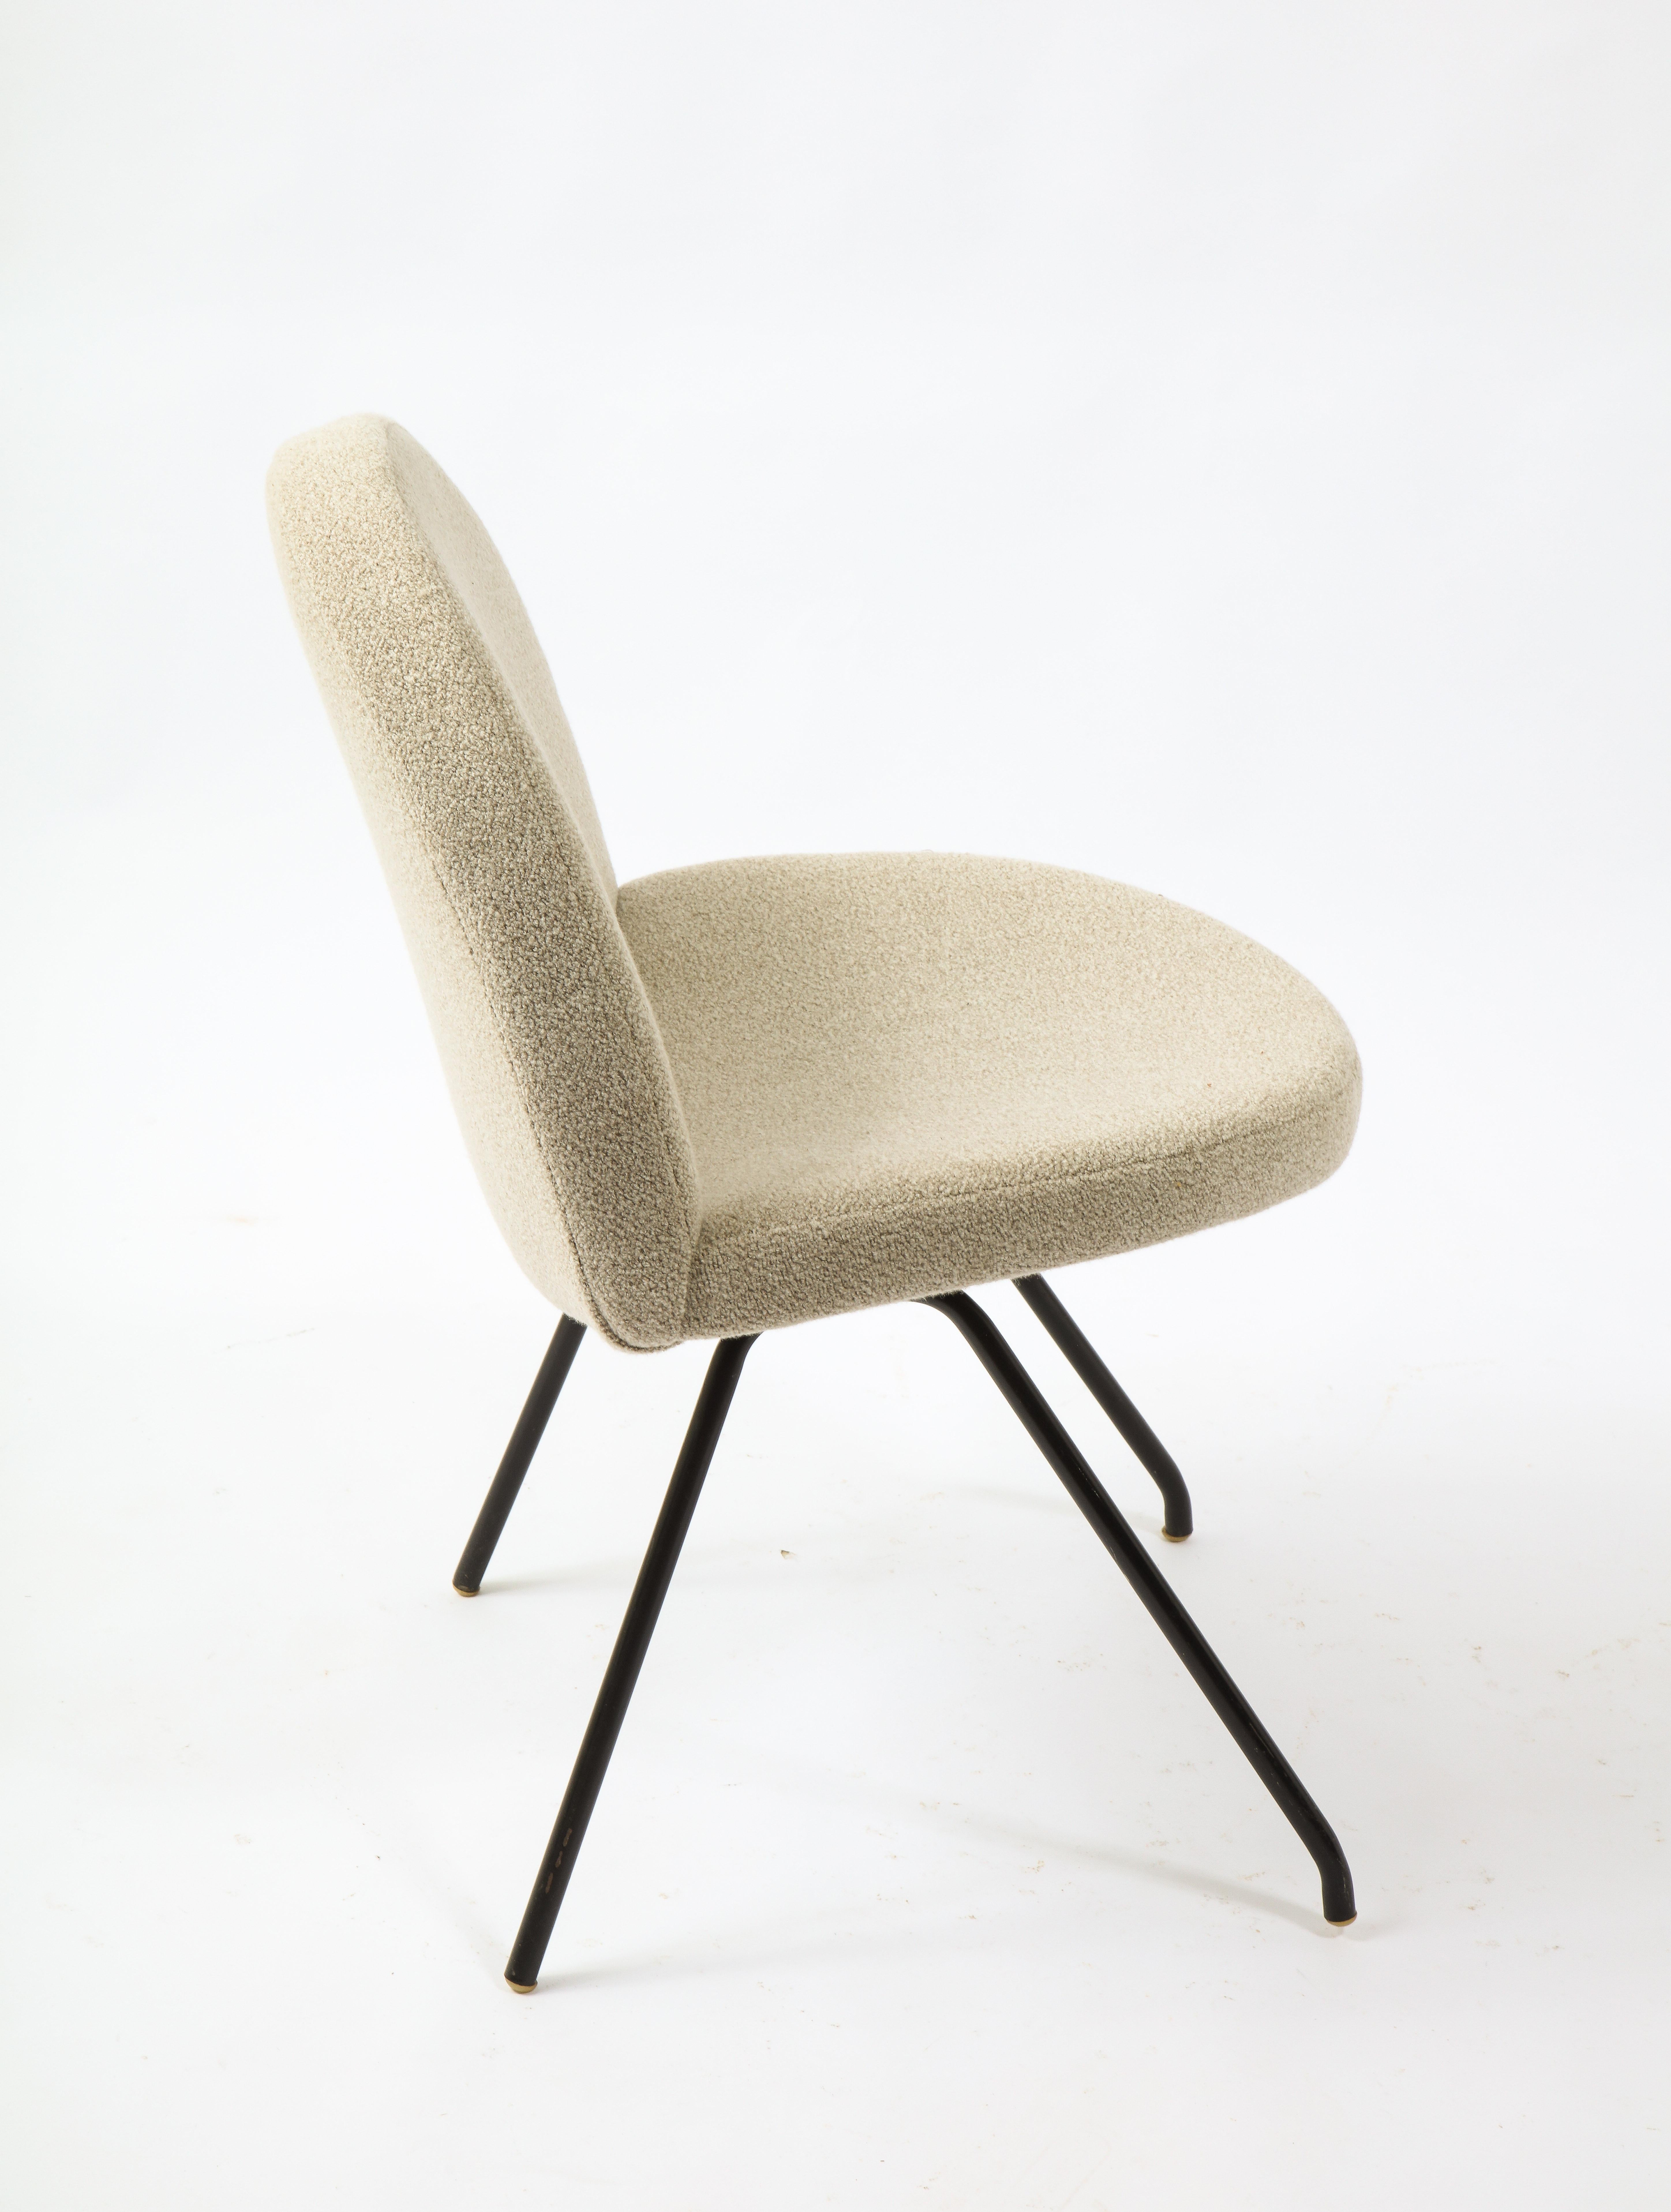 Joseph Andre Motte Set of 12 Model 771 Chair, France 1950's For Sale 3